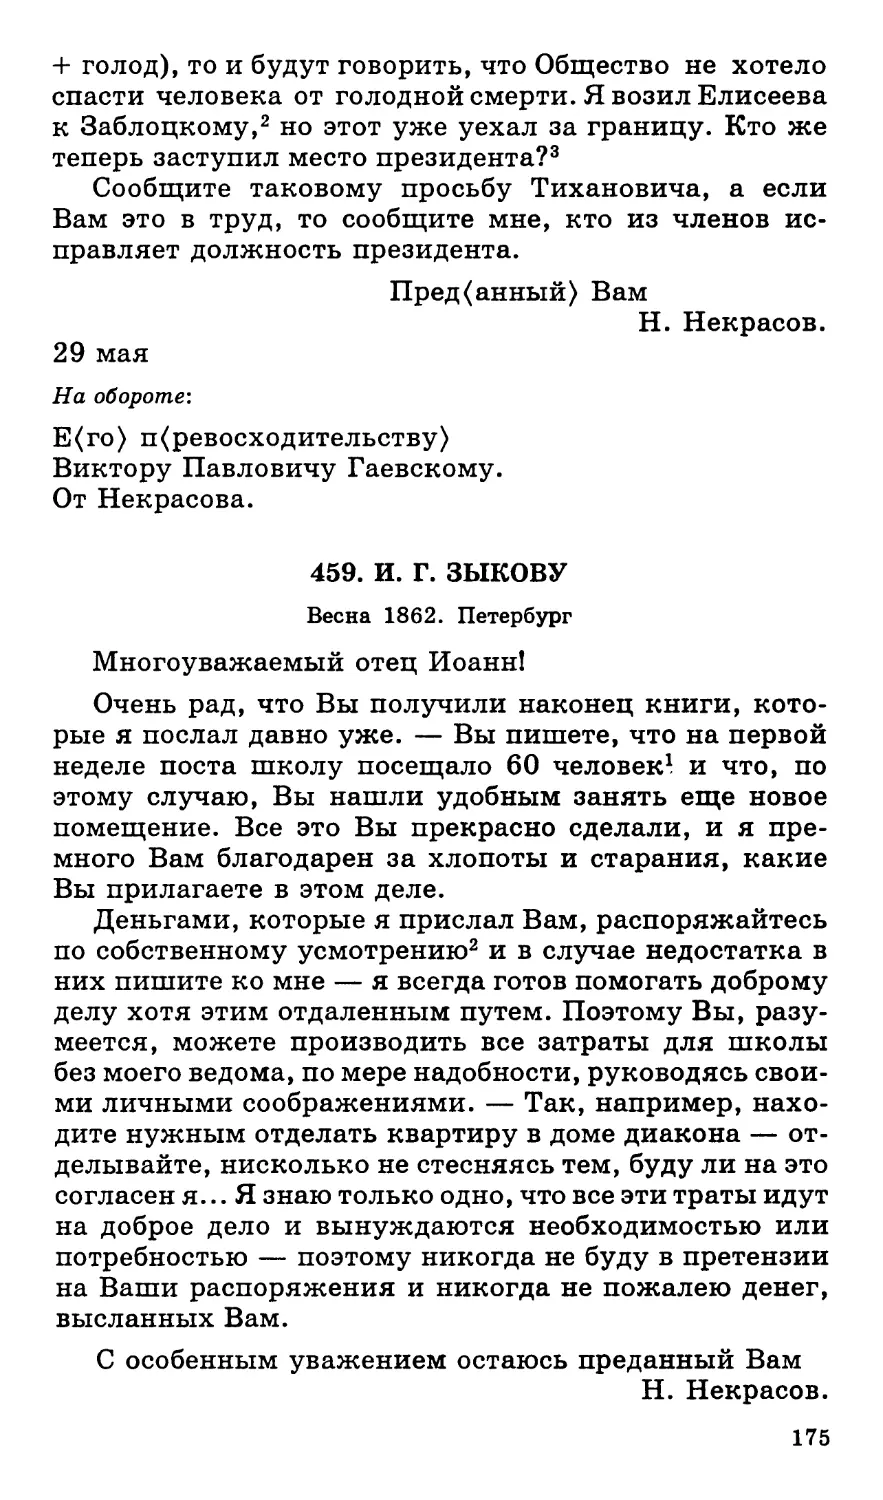 459.И. Г. Зыкову. Весна 1862